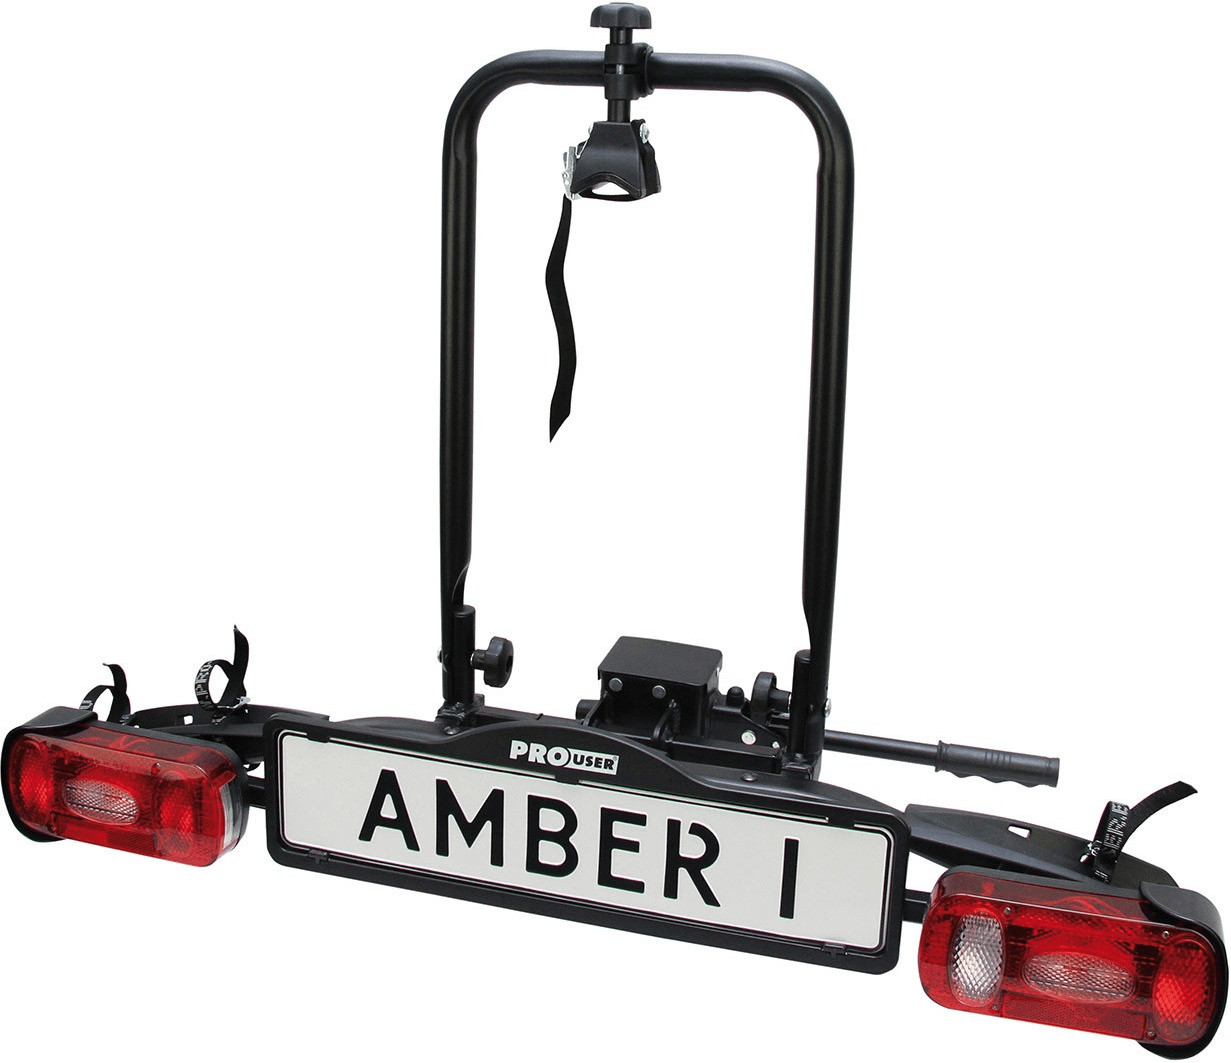  EUFAB 11559 Amber 1 Porte-vélo pour vélo électrique